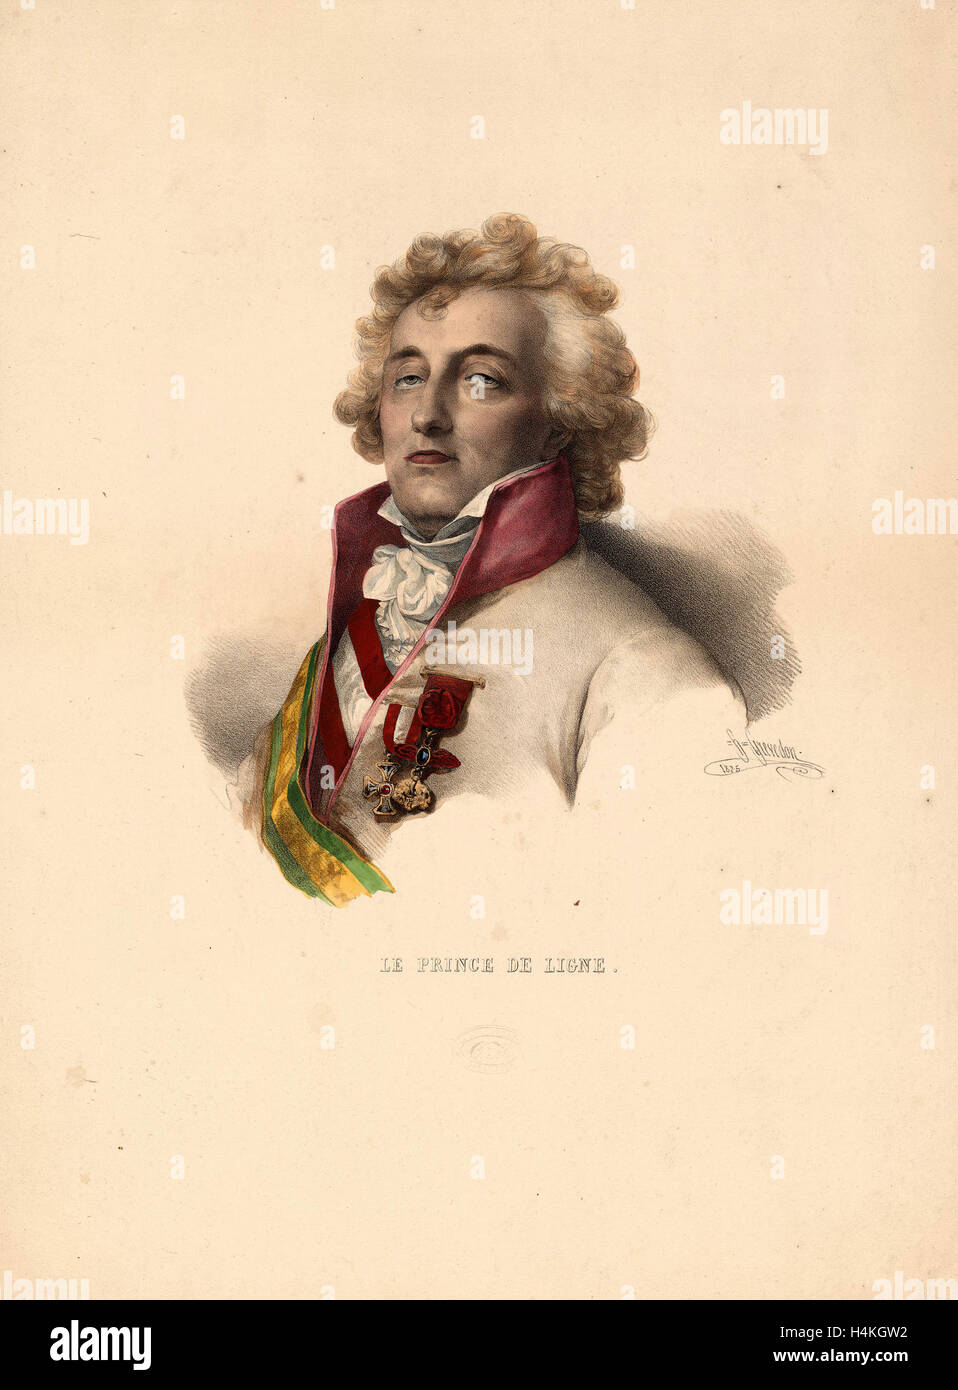 Tête-et-épaules portrait du Prince de Ligne, qui était à bord de la montgolfière La Fresselle, janv. 19, 1784 Banque D'Images